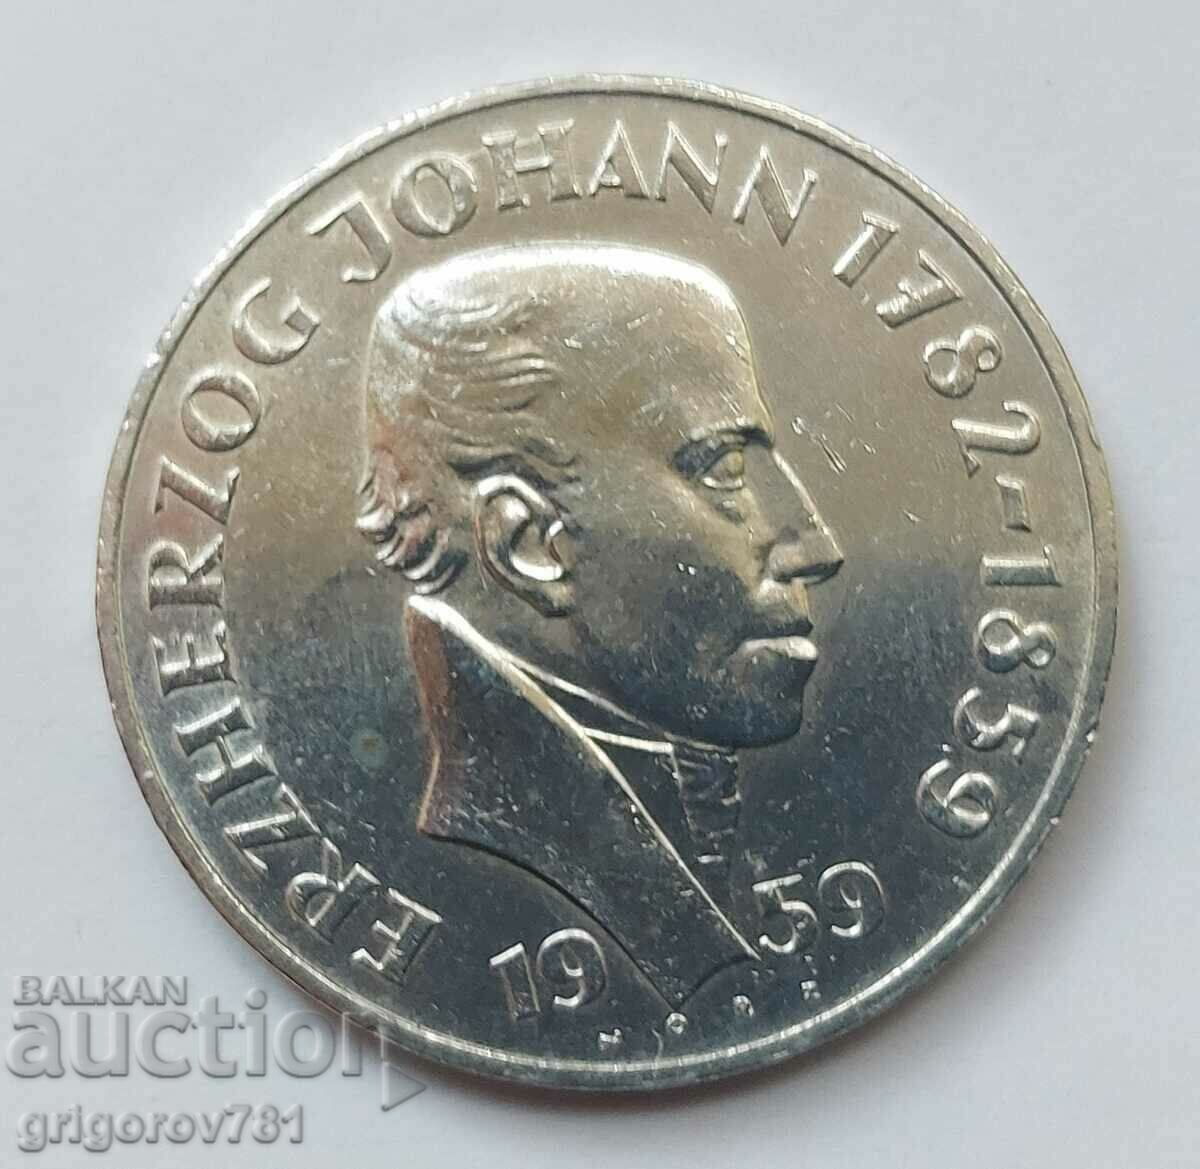 Ασημένιο 25 σελίνια Αυστρία 1959 - Ασημένιο νόμισμα #11